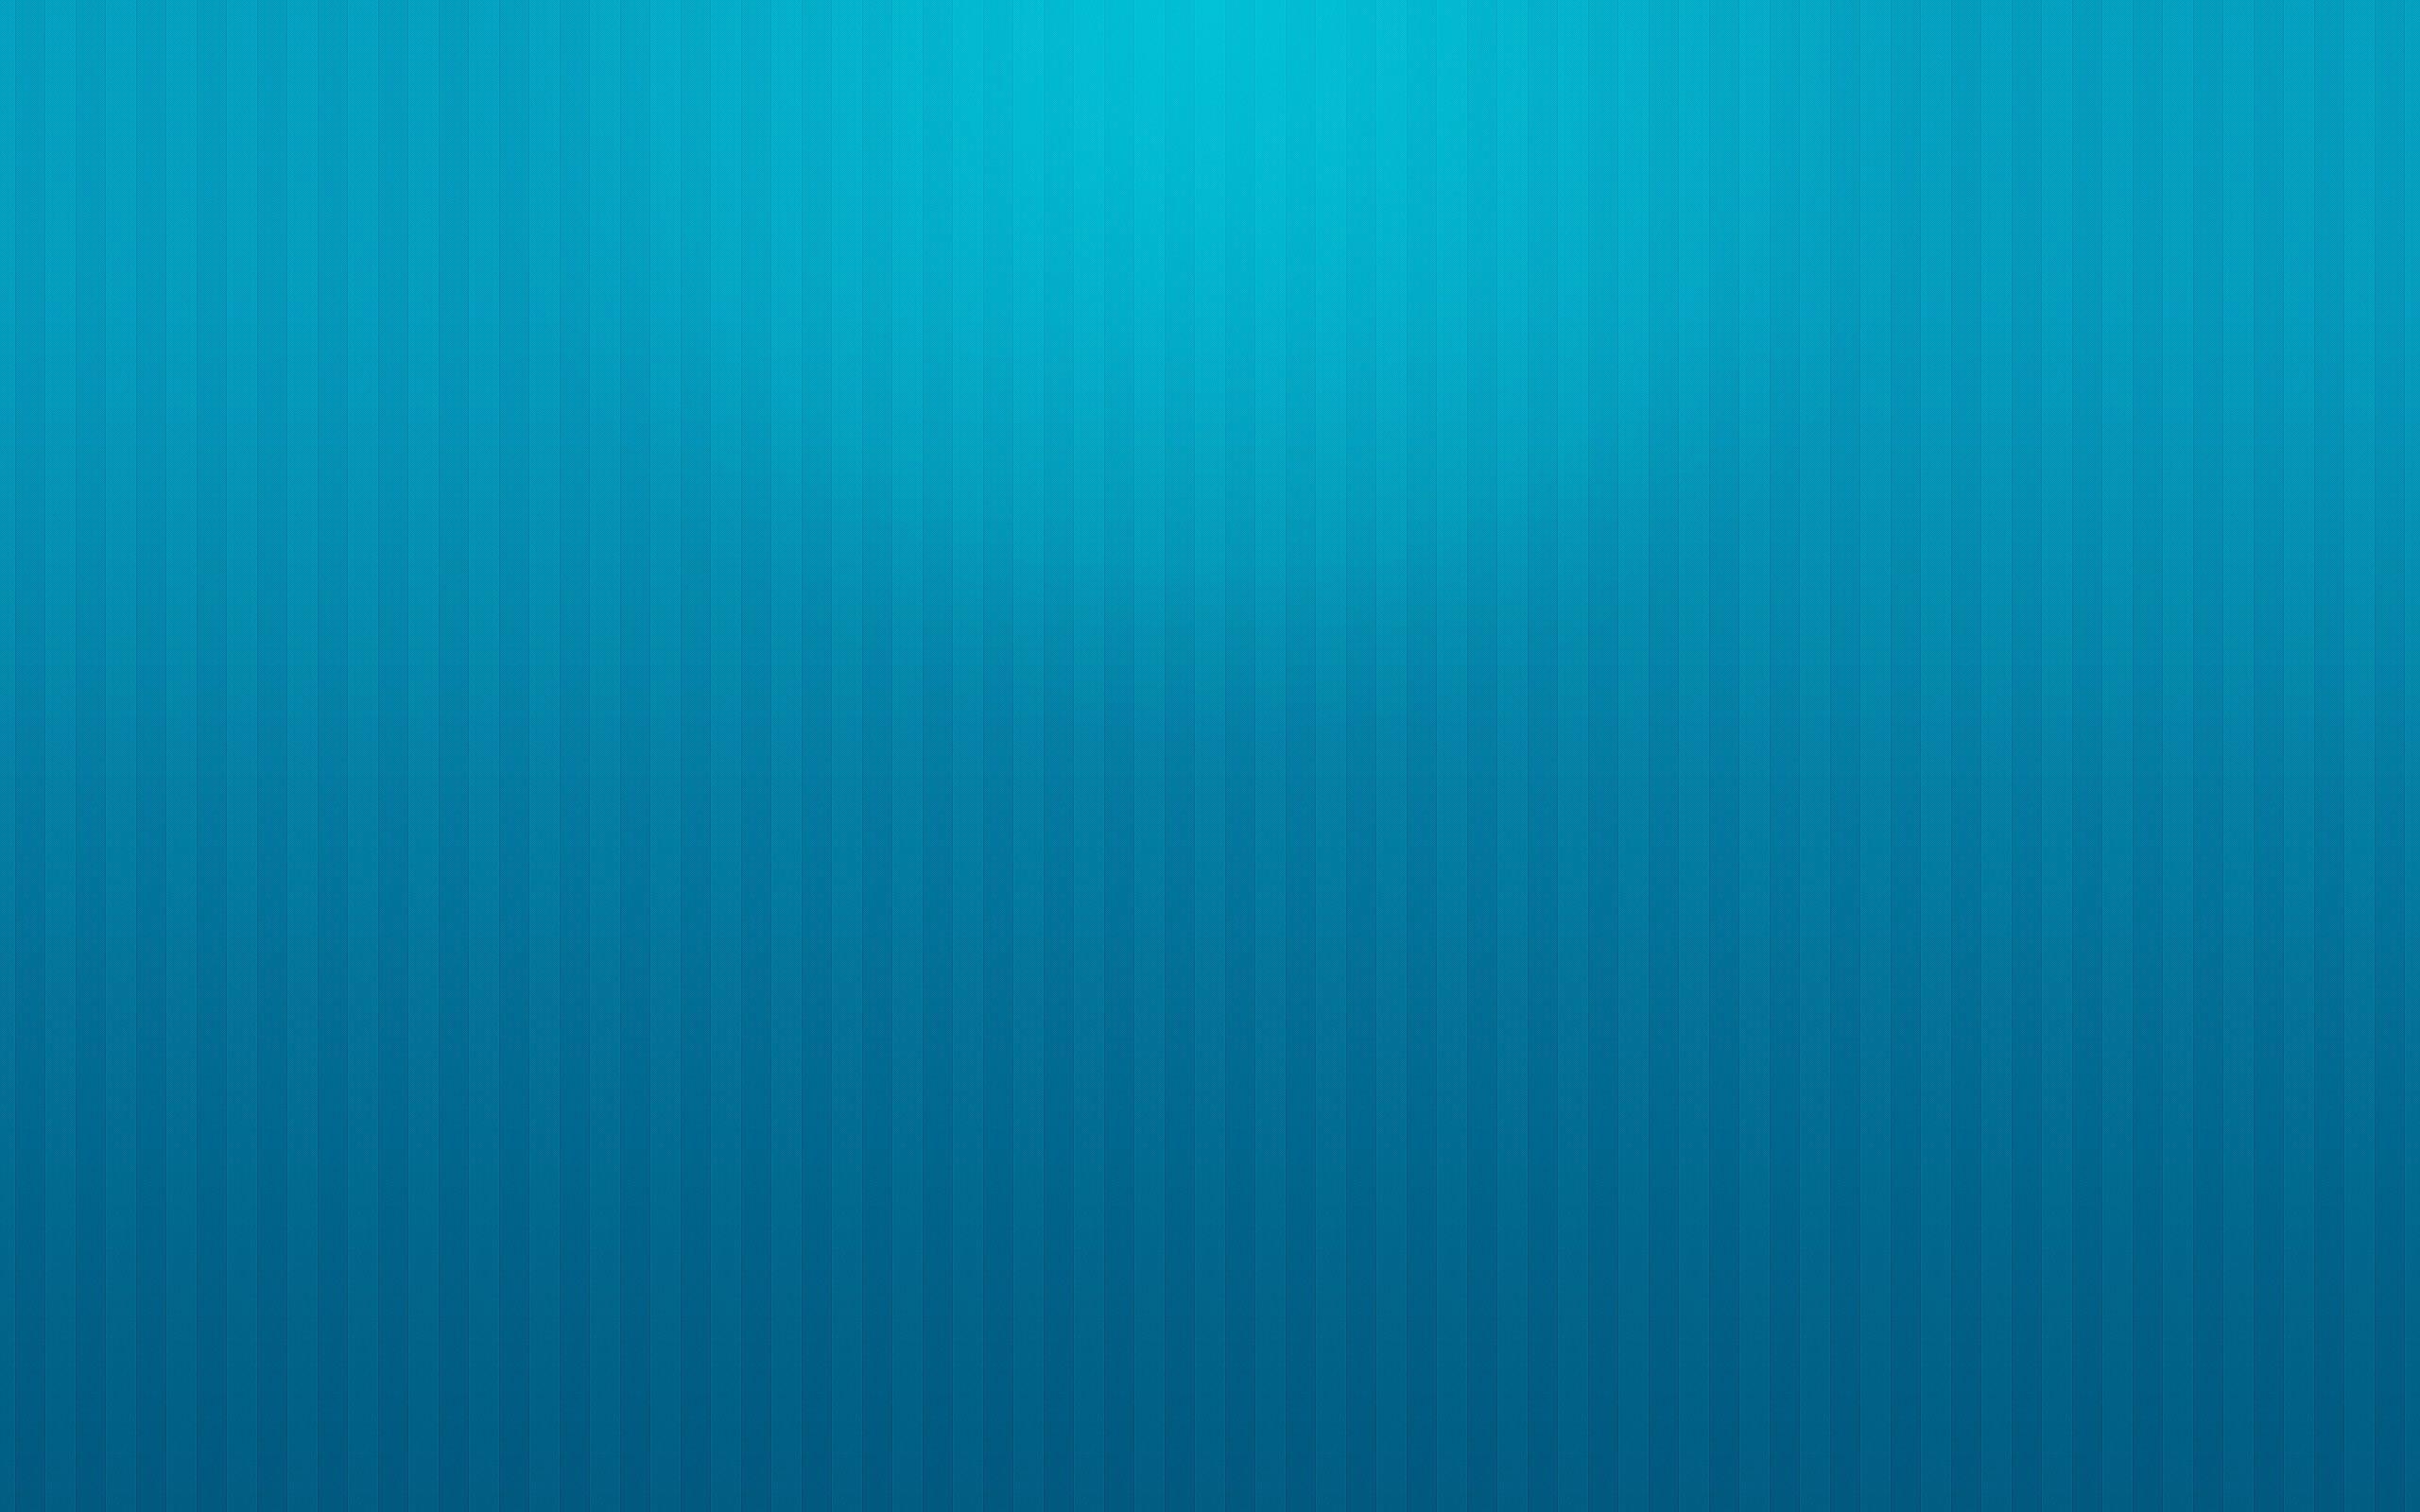 Plain Light Blue Background Wallpaper 1024x768PX Wallpaper